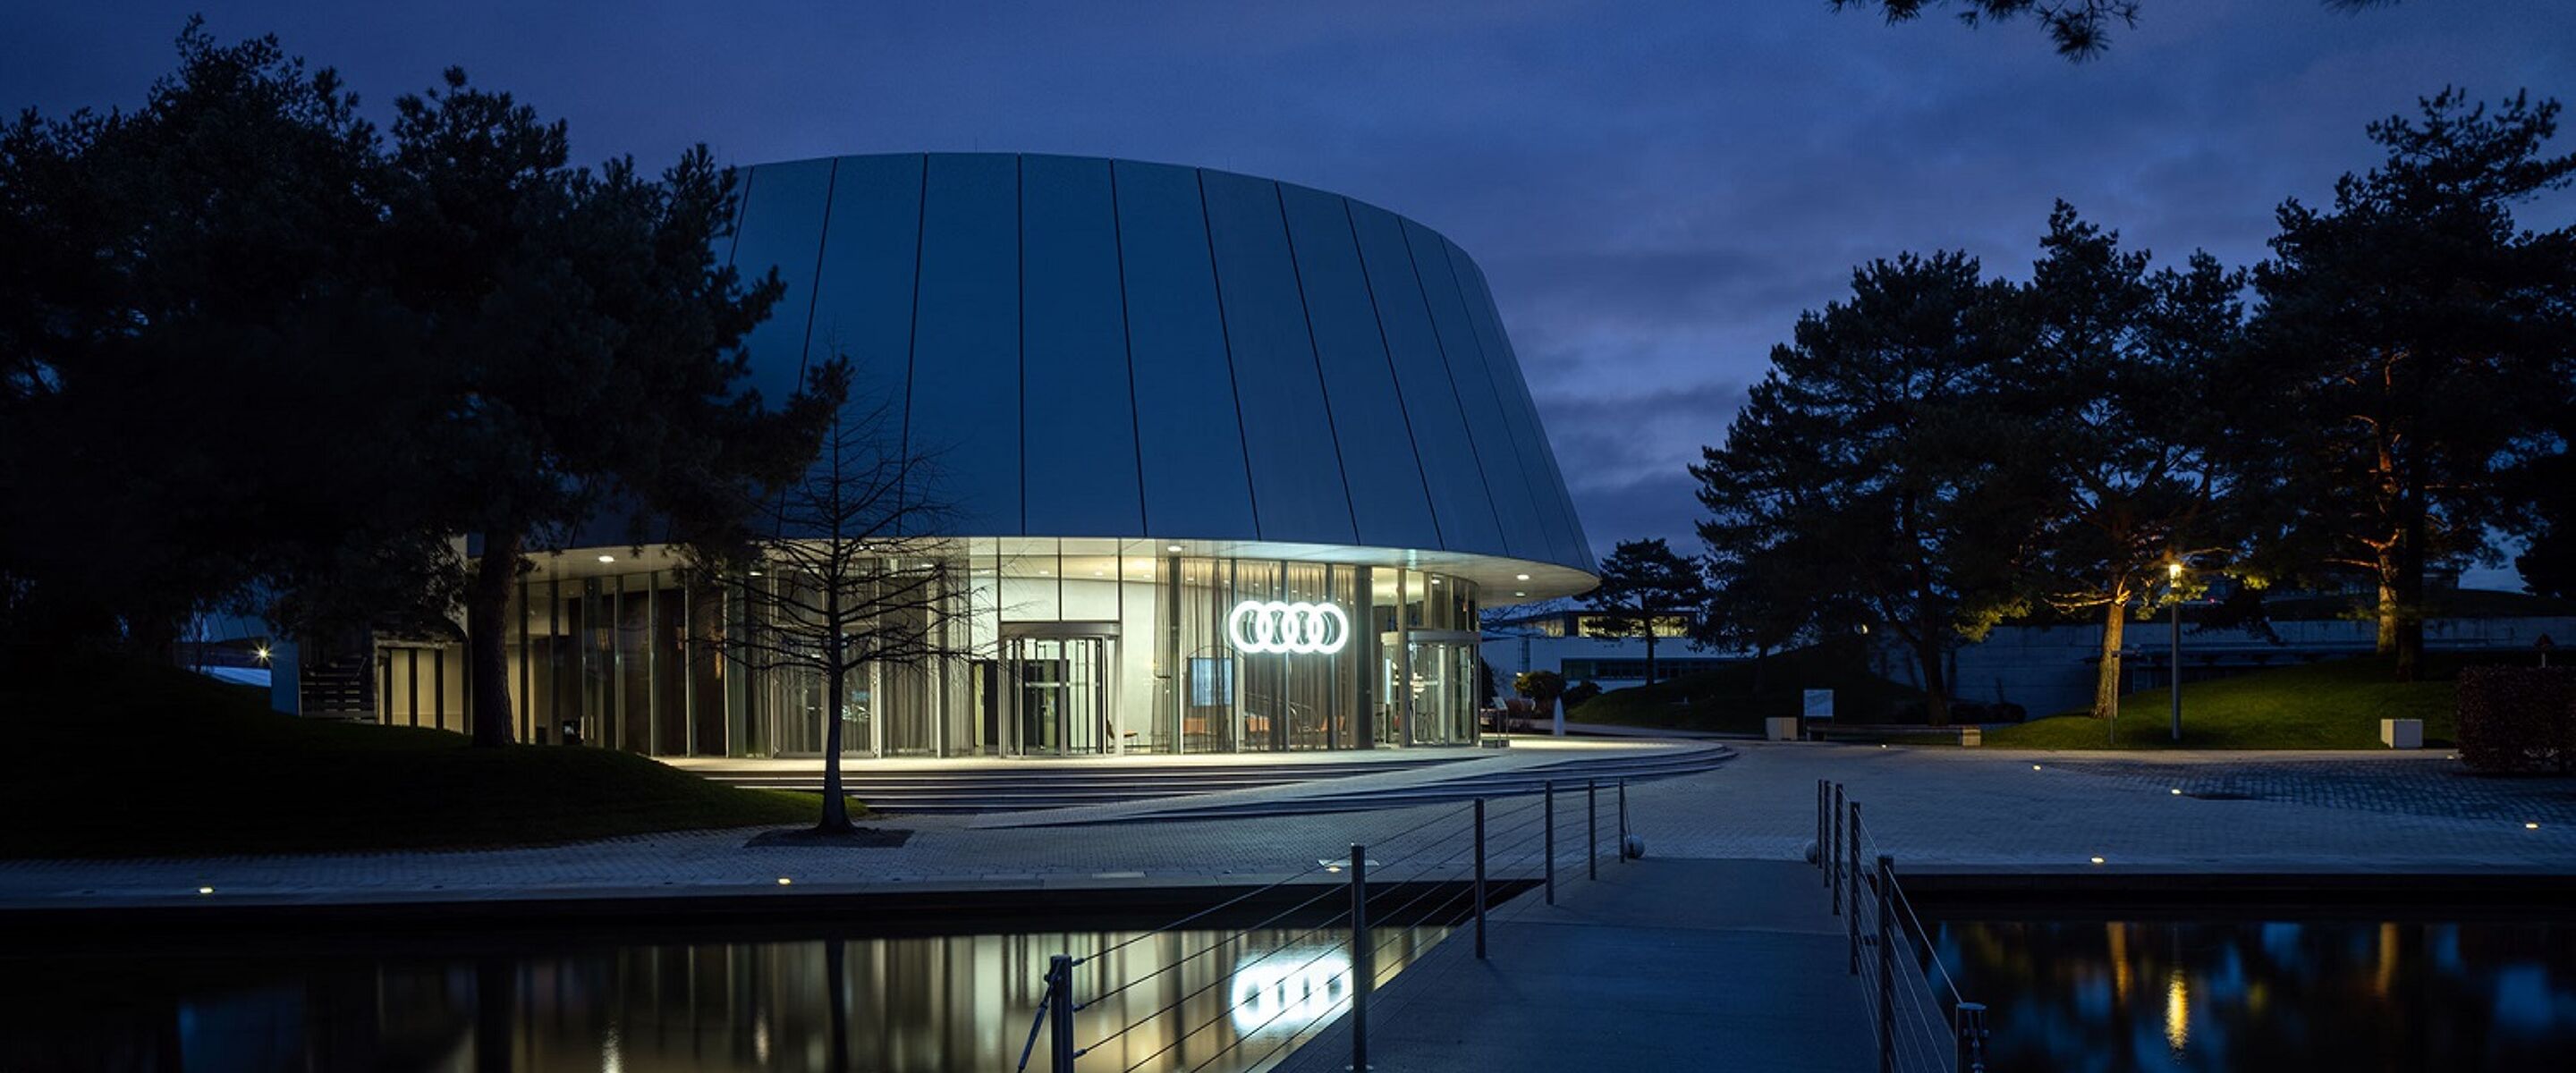 Audi tentoonstelt merkwaarden in een nieuw House of Progress